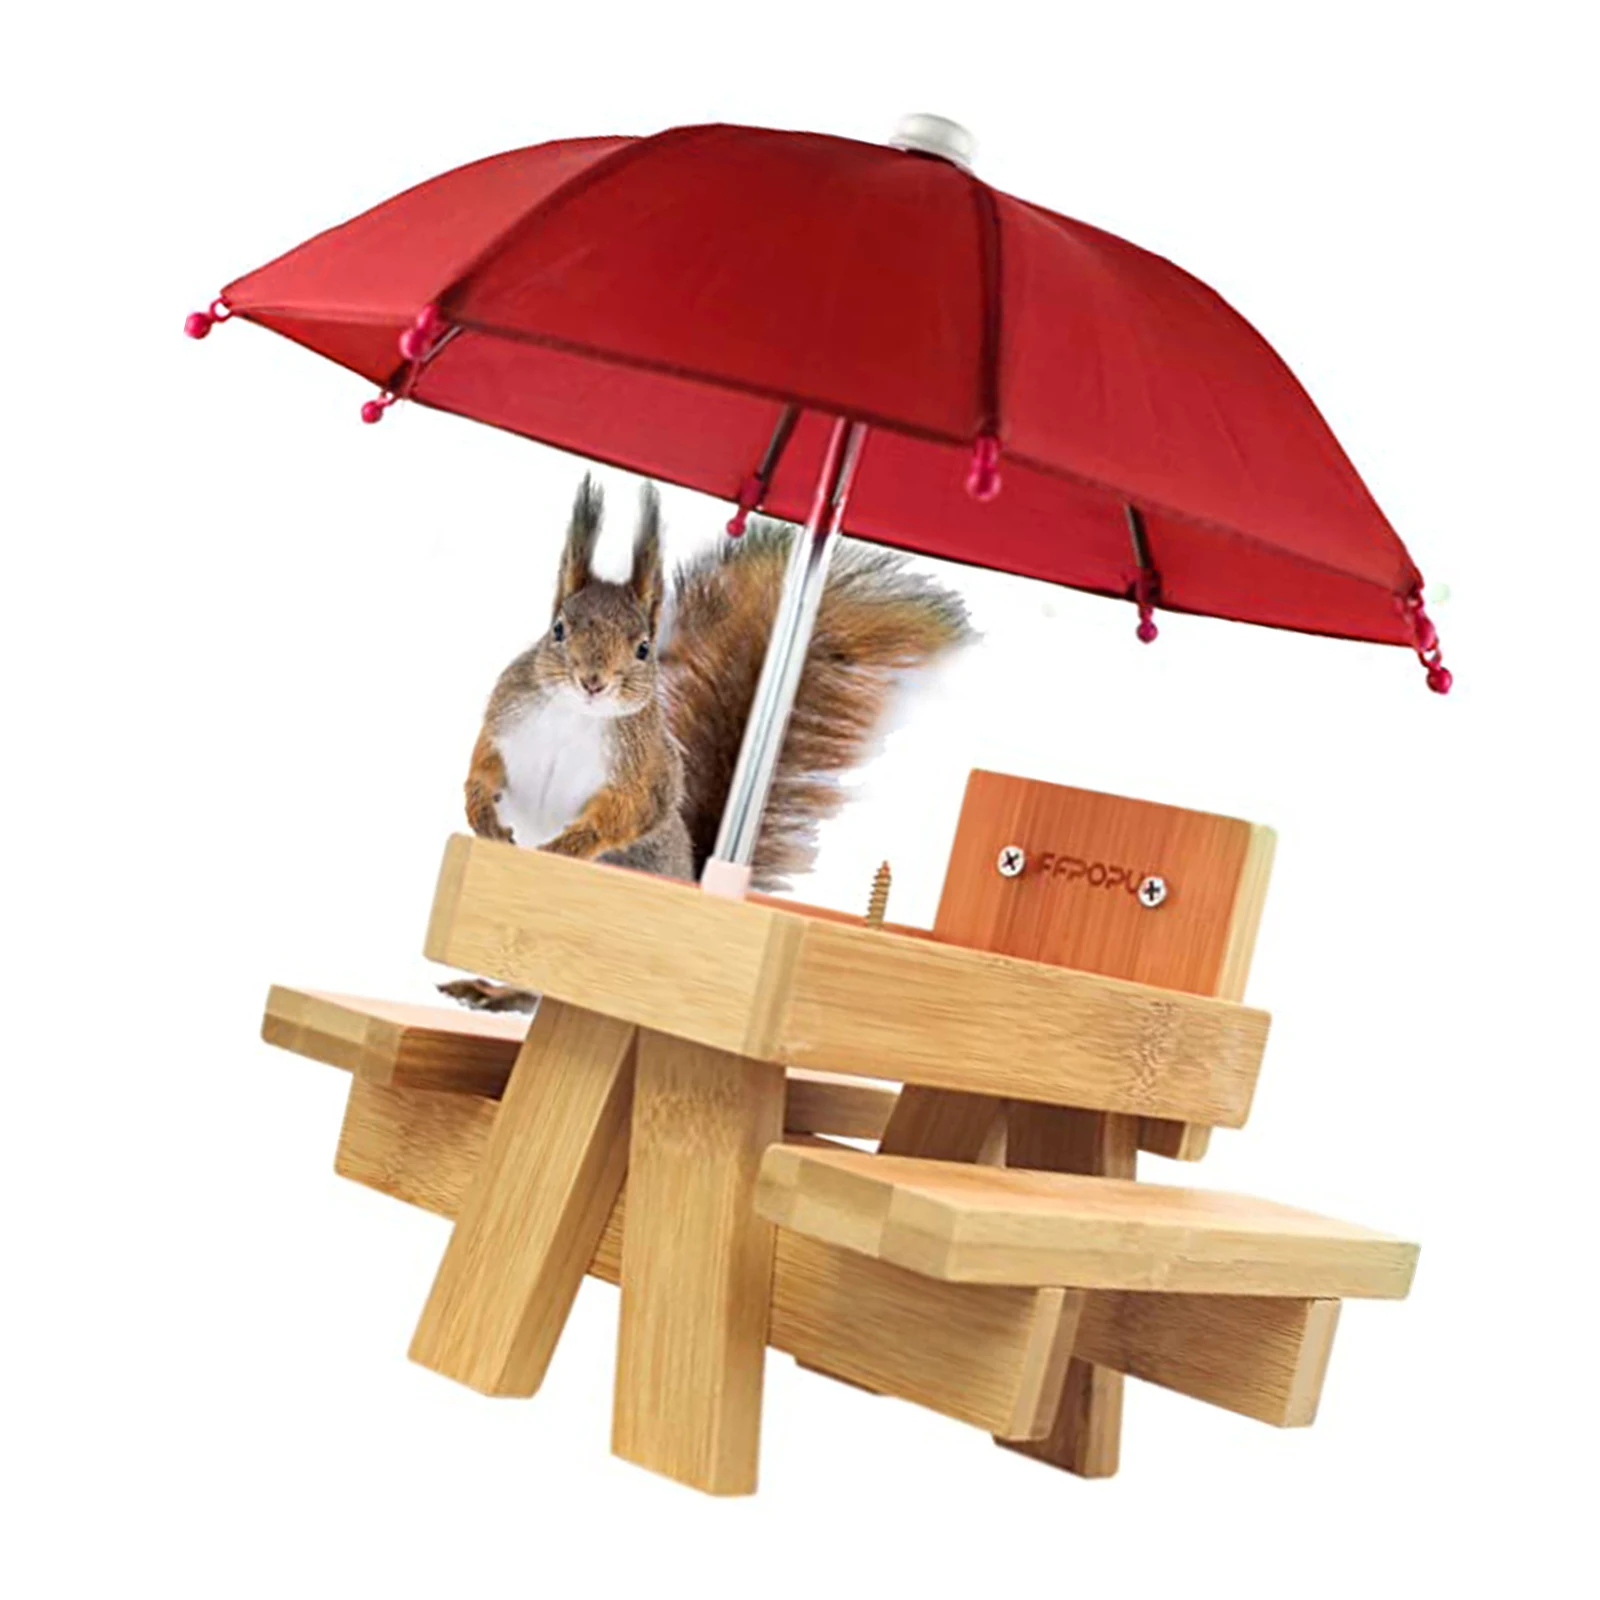 

Кормушка деревянная Уличная Для белки, смешной стол для кормления белки с зонтом для сада, двора, дерева, кормушка деревянная для белки